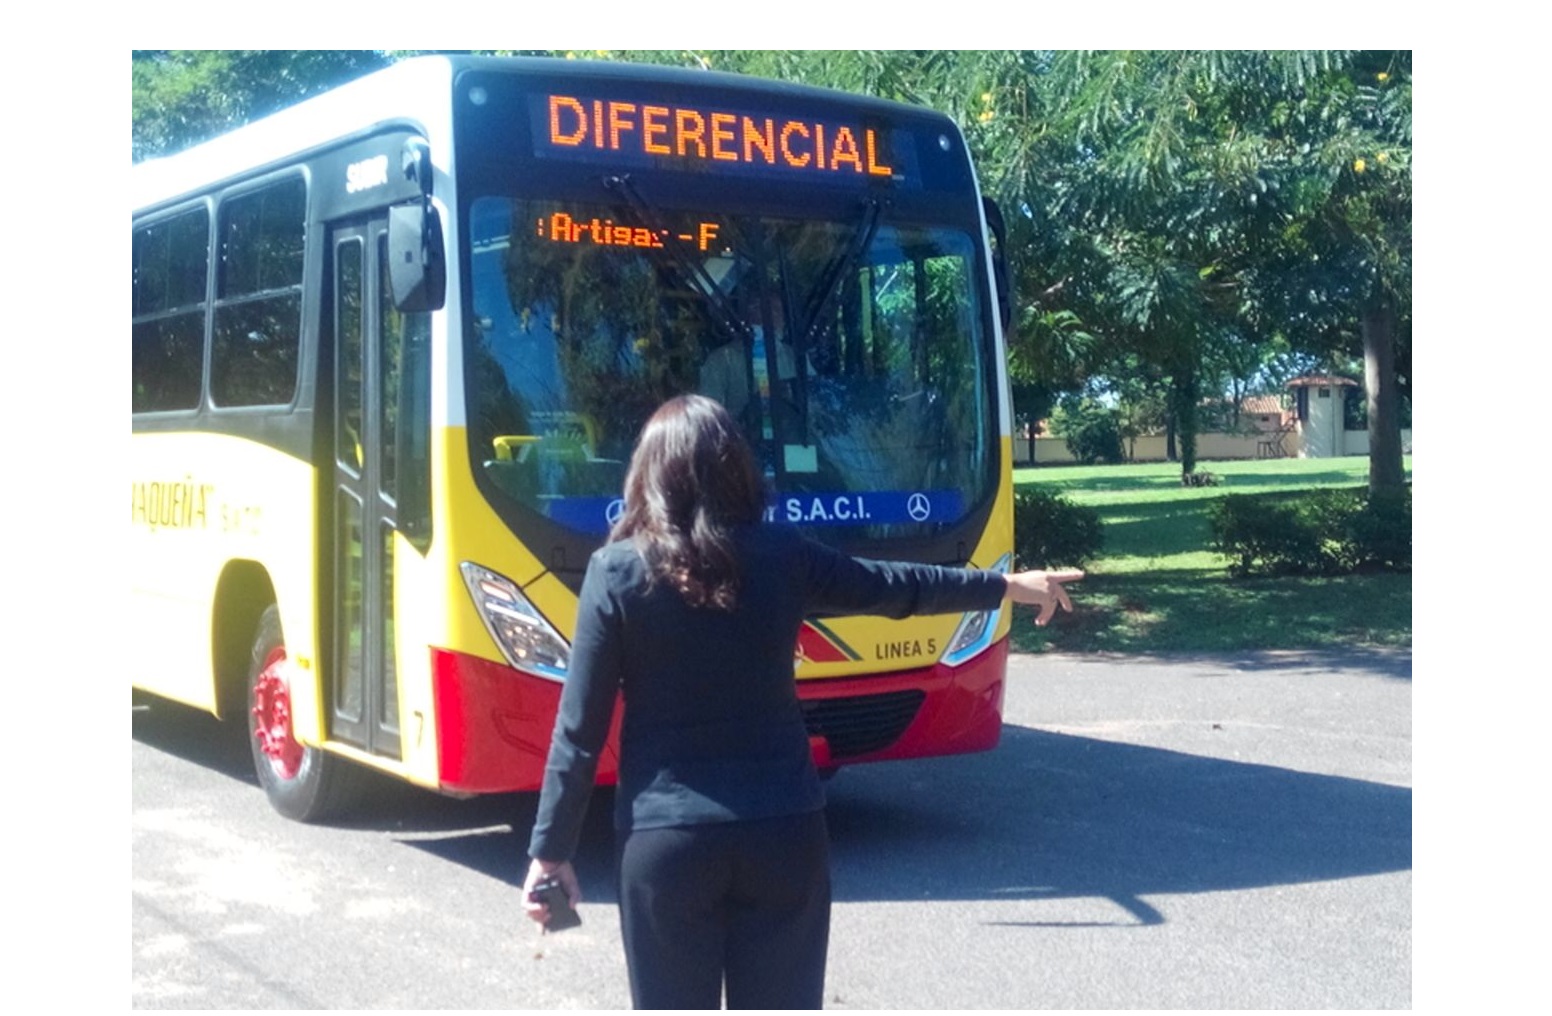 Gobierno anuncia reducción del precio del pasaje del bus diferencial